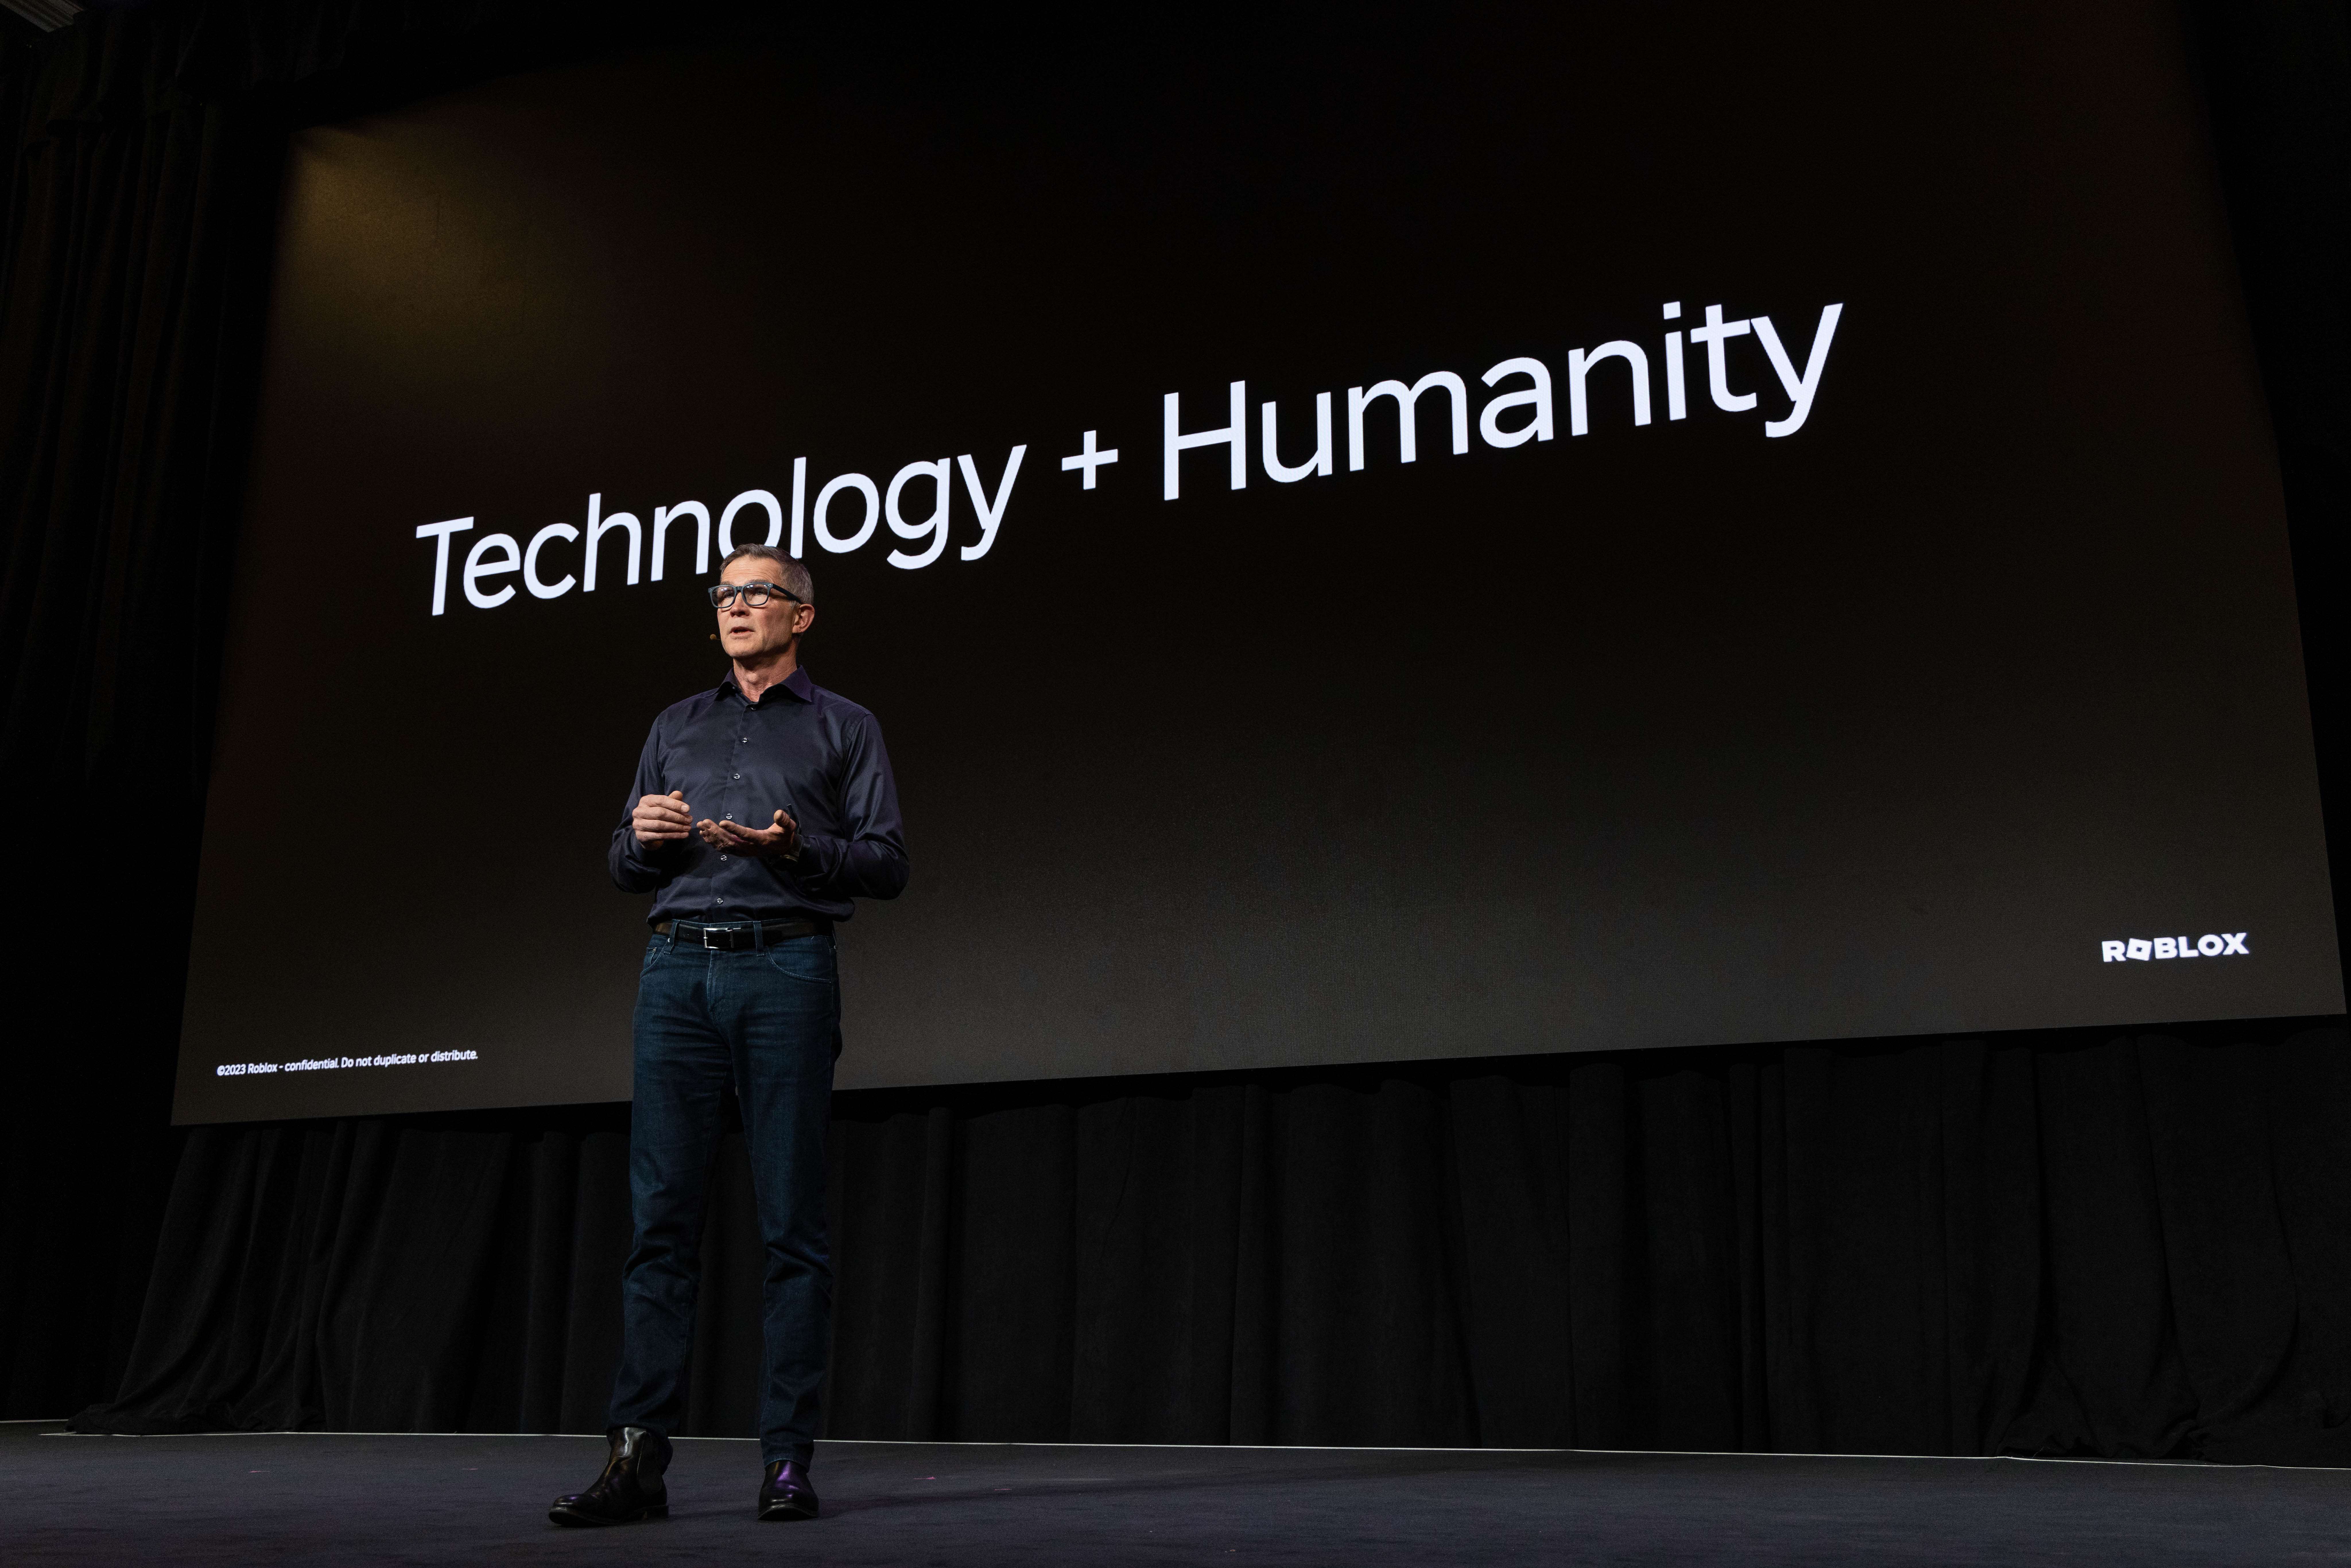 डेविड मंच पर एक स्लाइड के सामने खड़े हैं जिस पर प्रौद्योगिकी + मानवता लिखी है